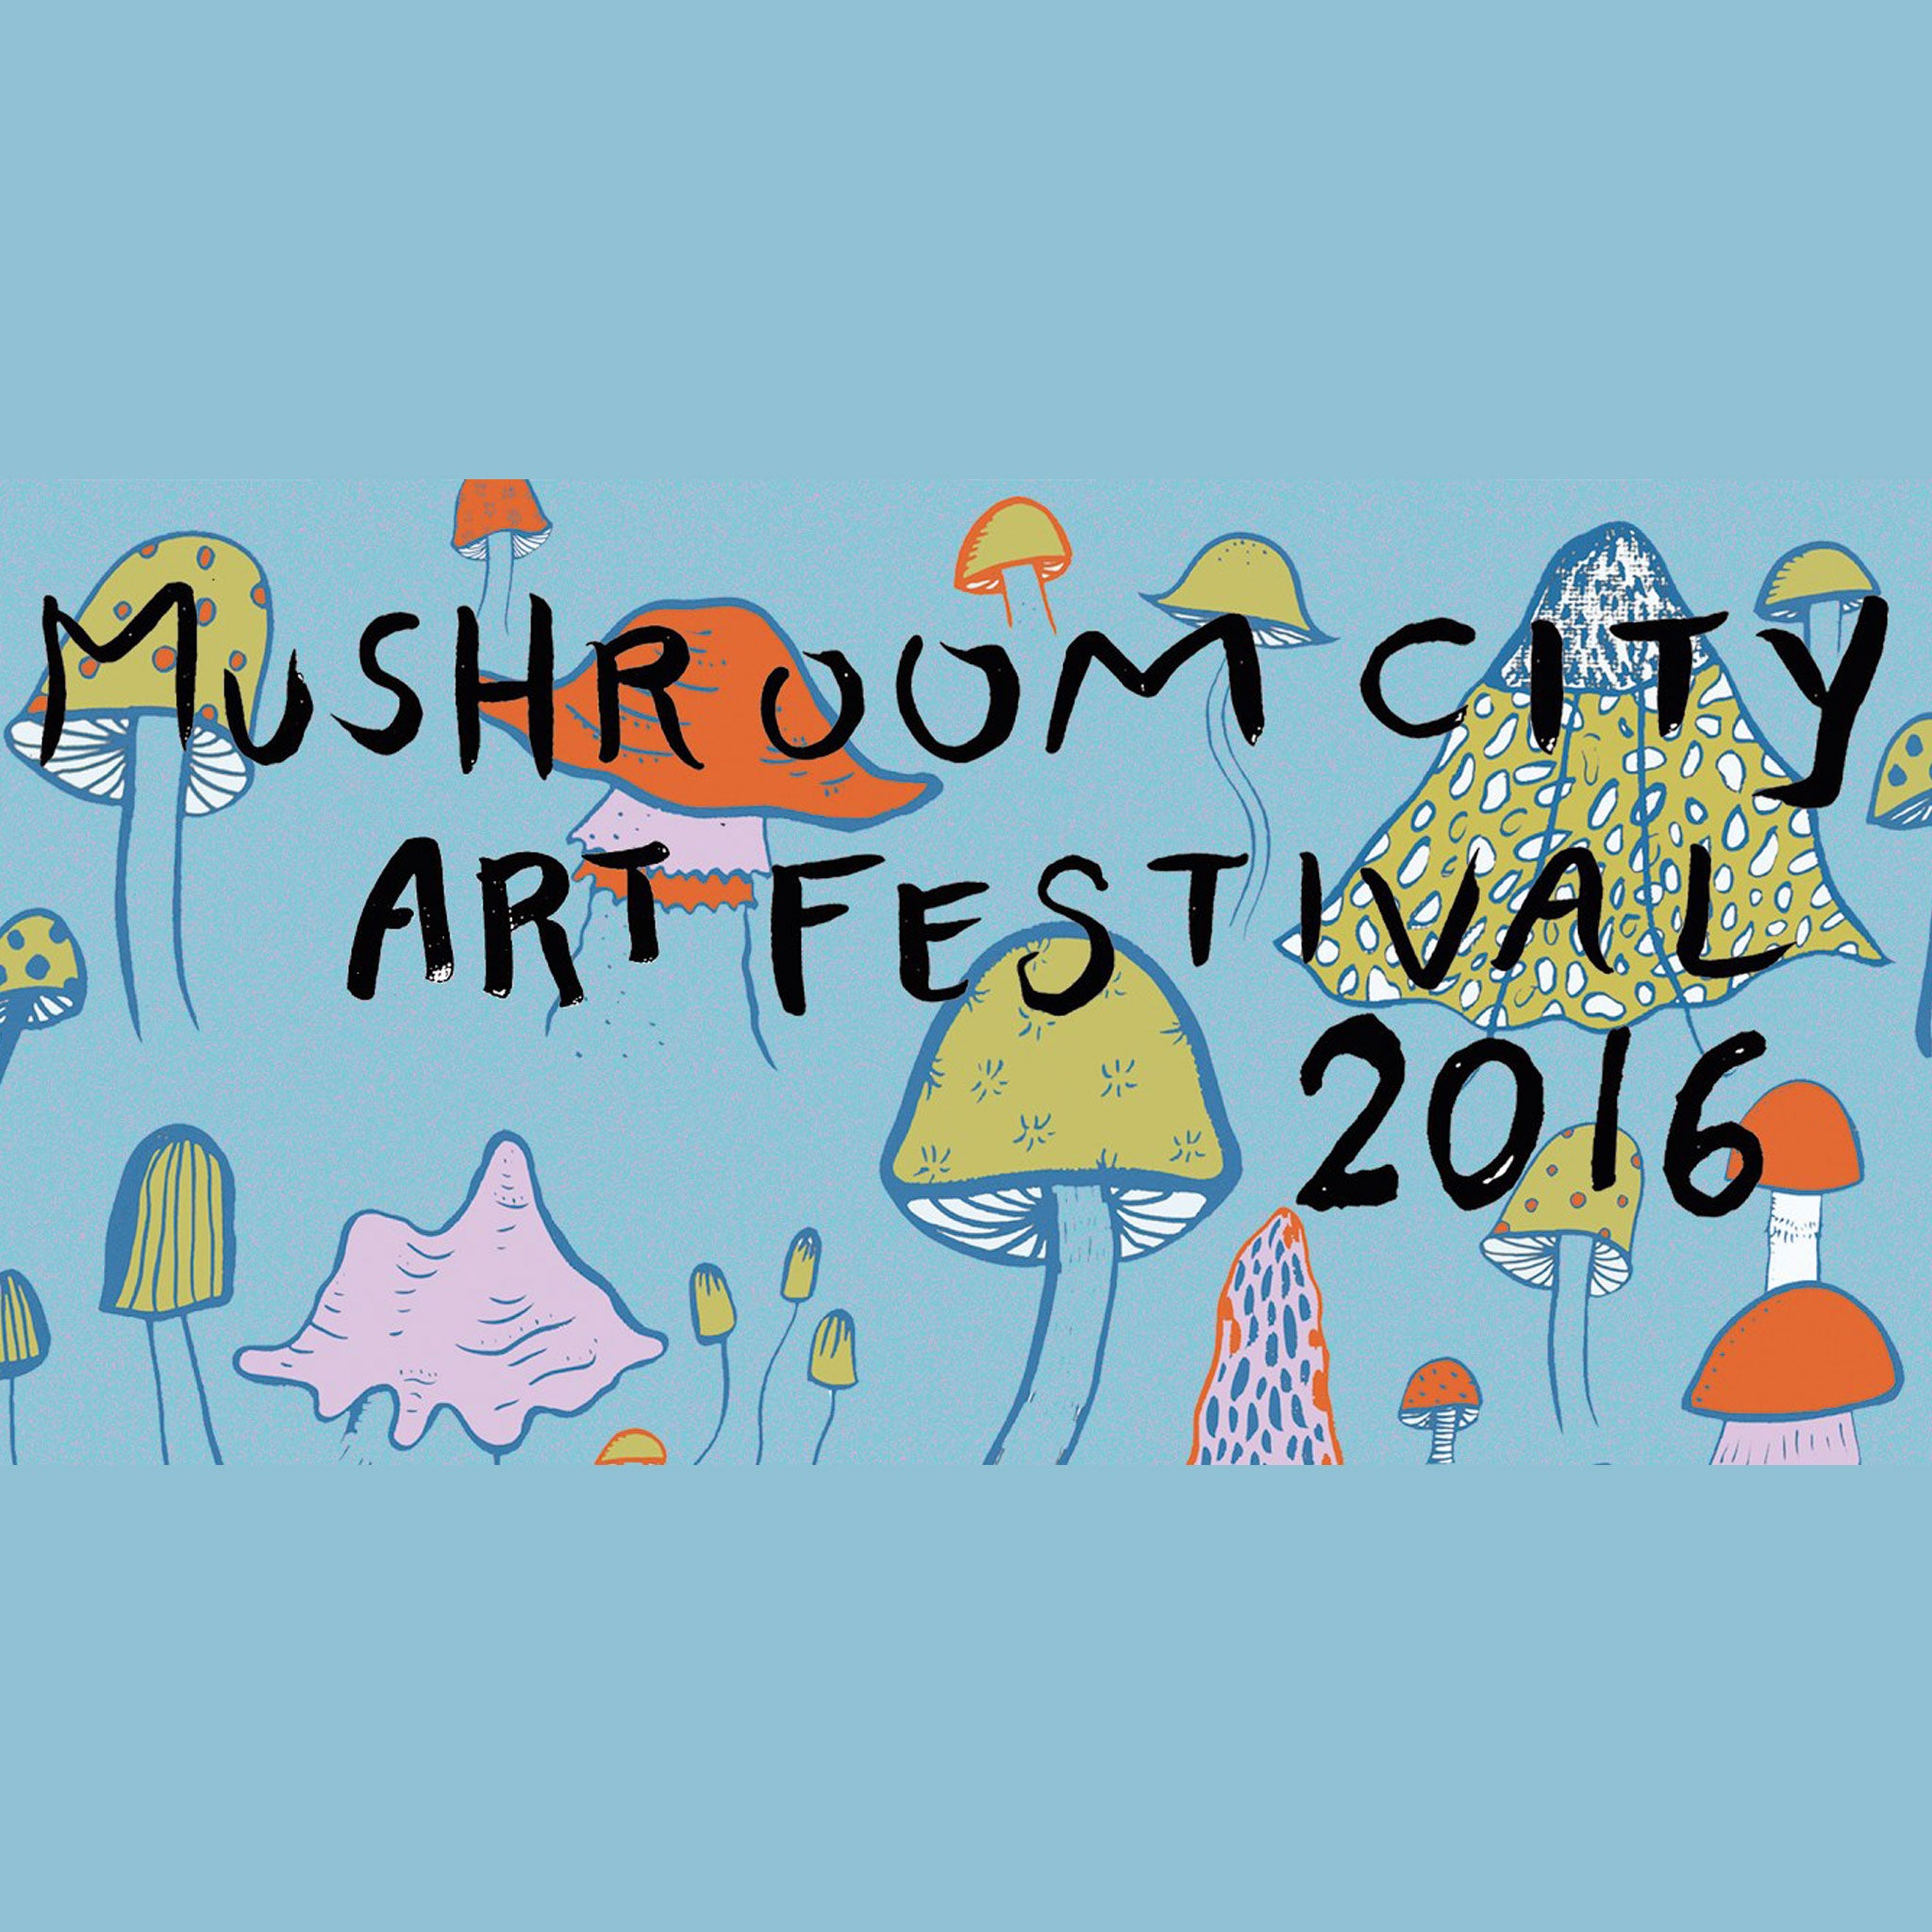 Mushroom City Art Festival